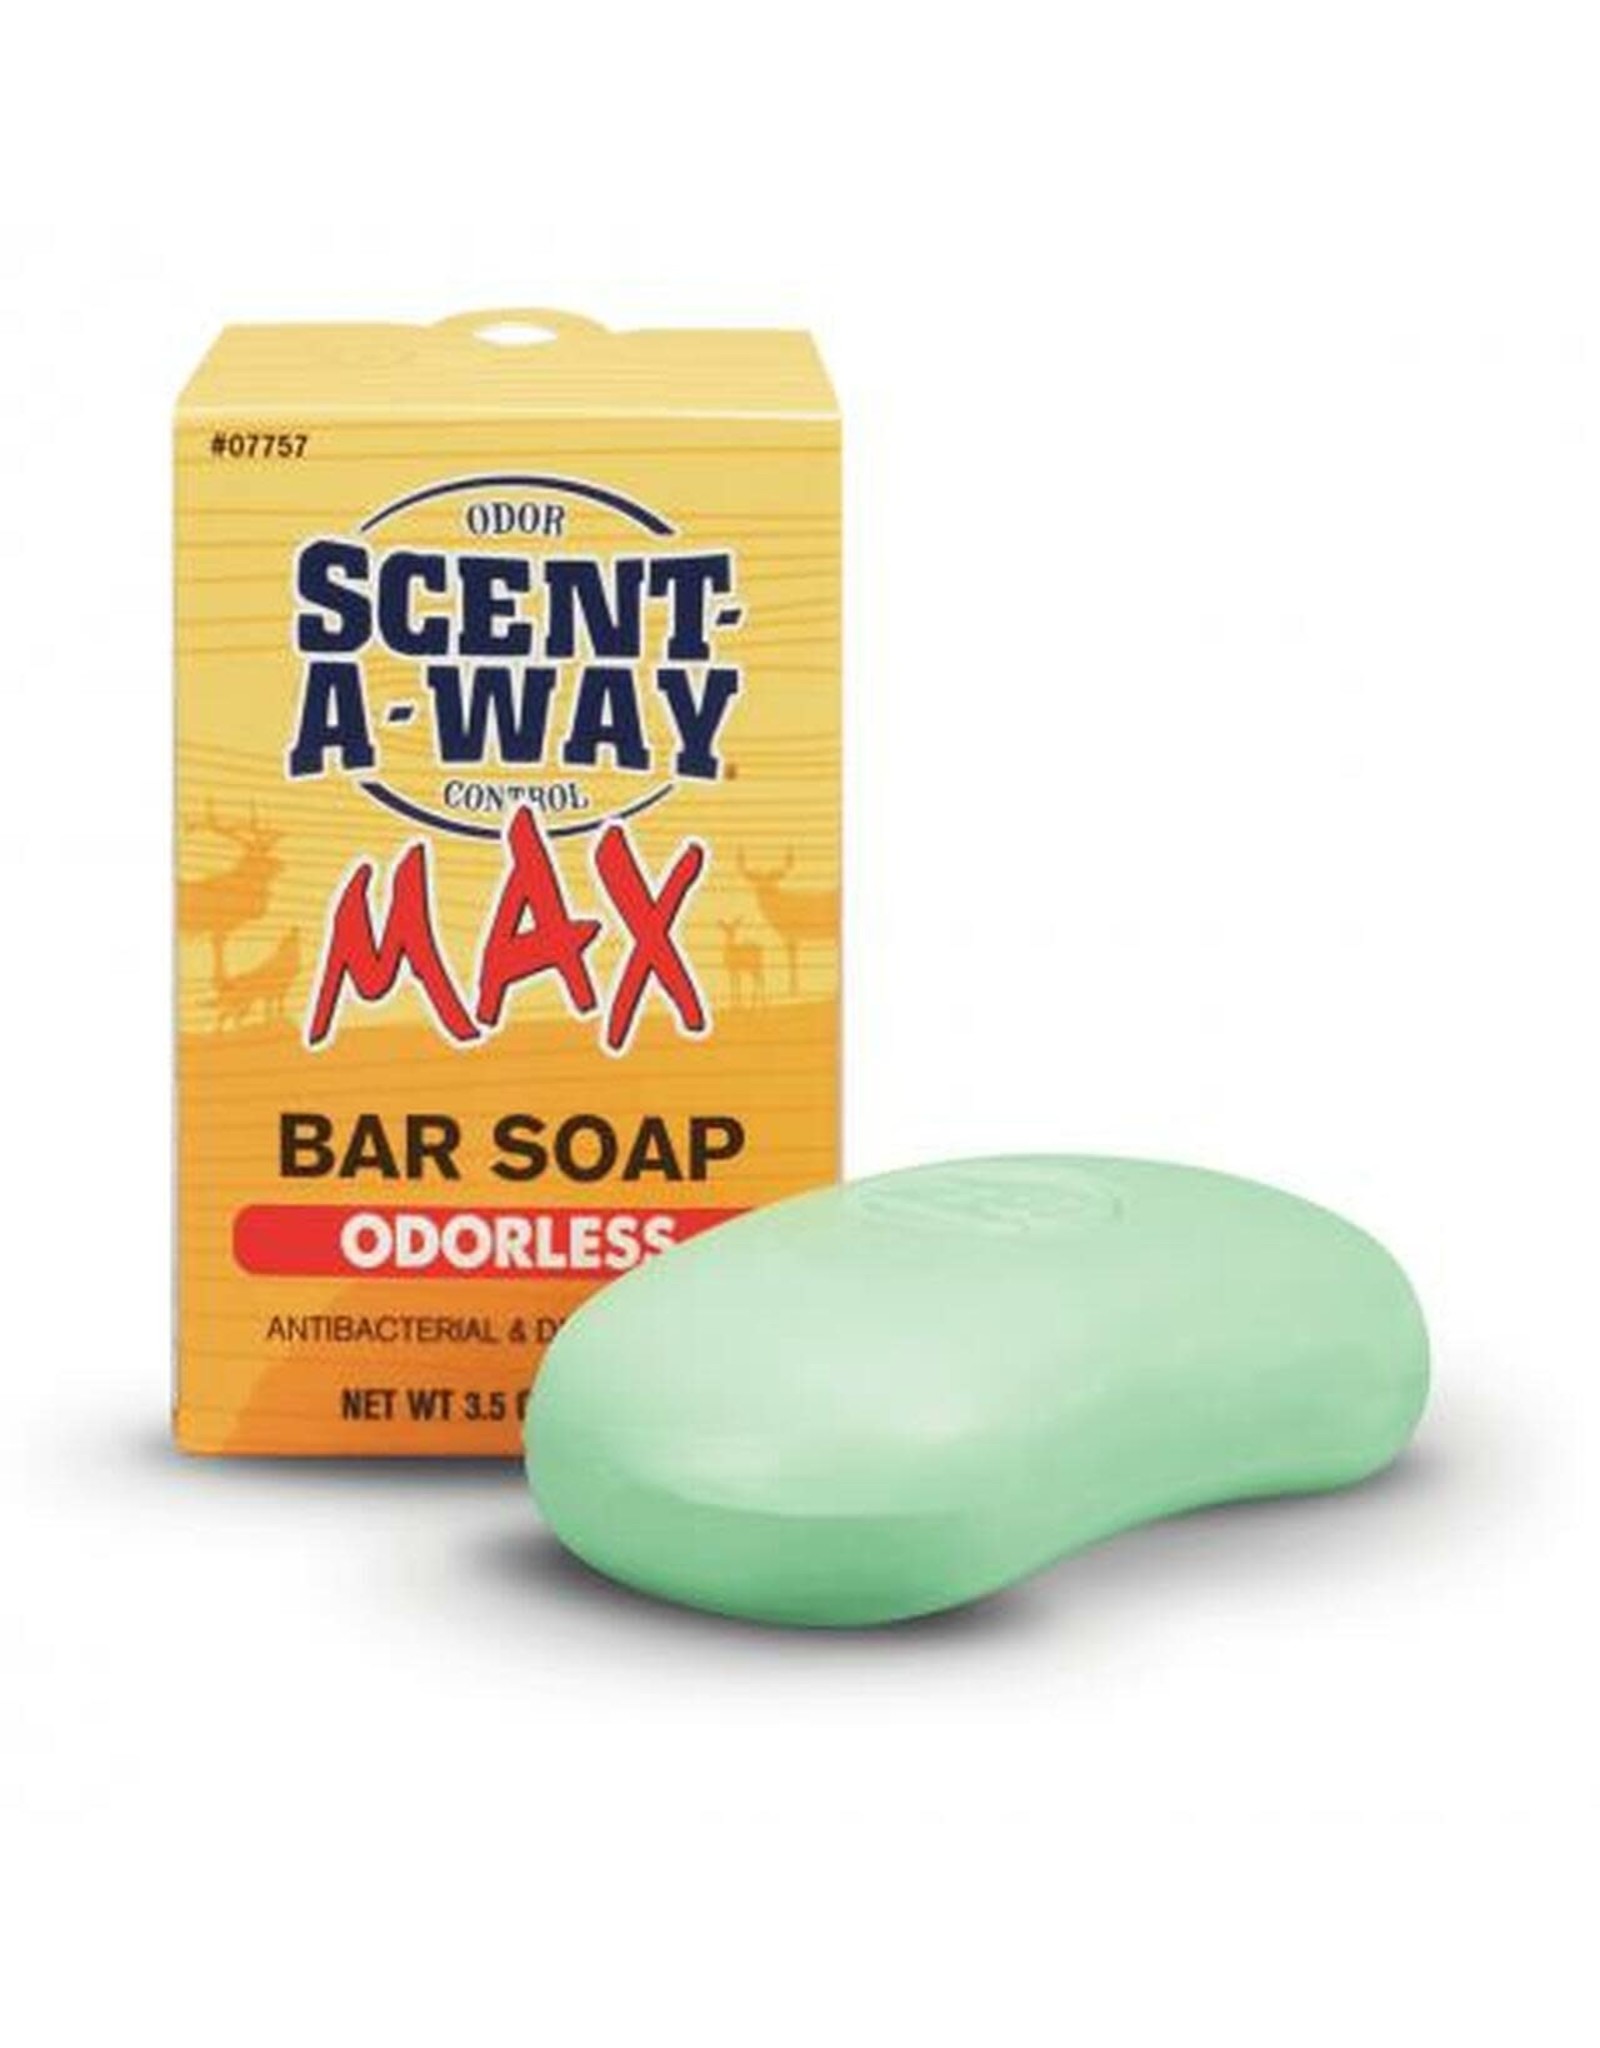 SENT-A-WAY BAR SOAP